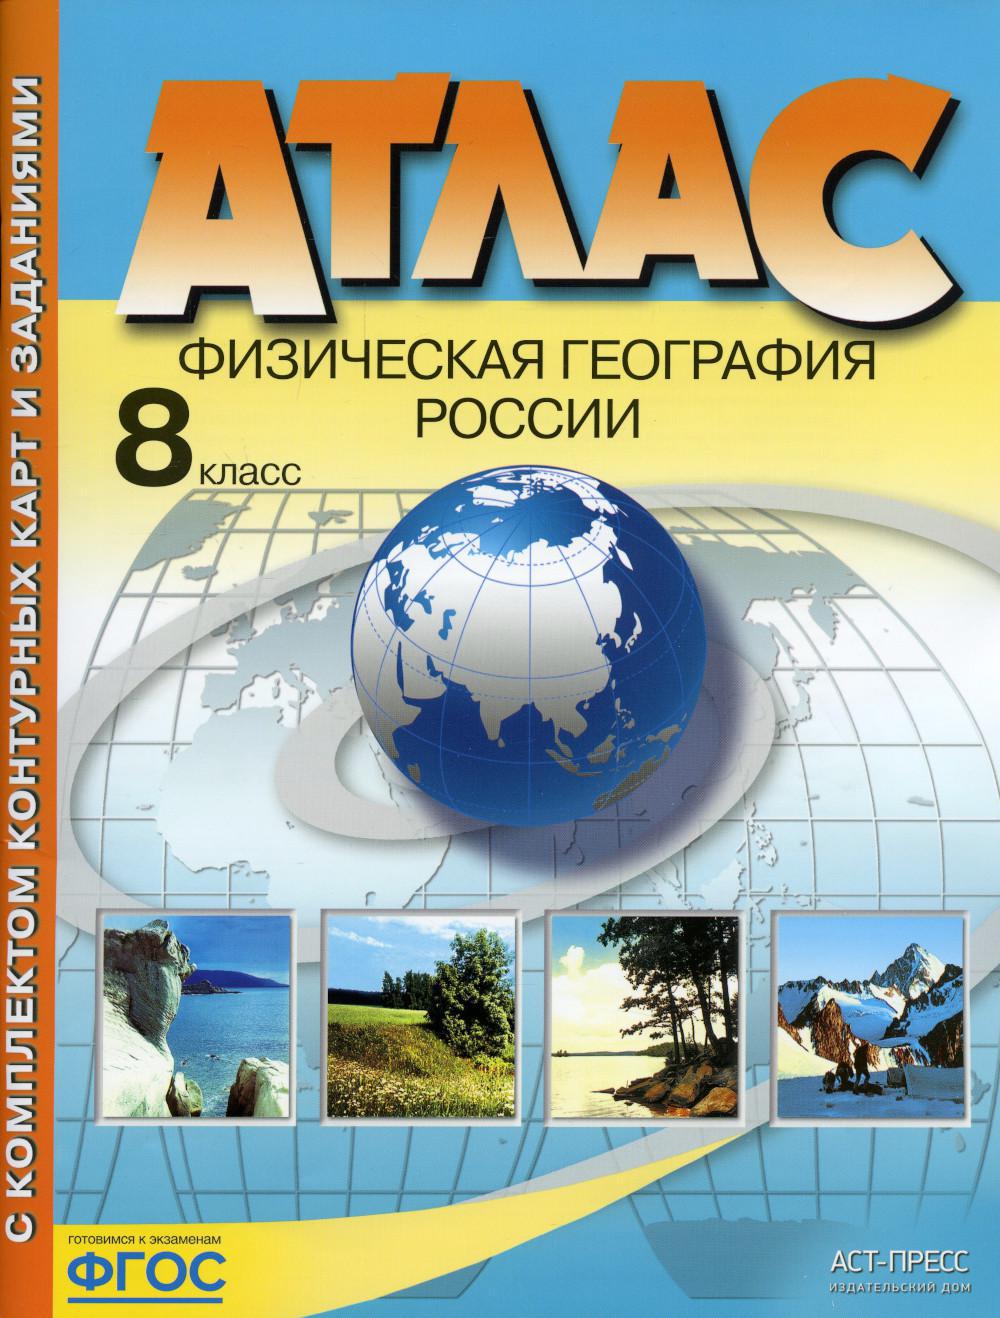 Атлас. Физическая география России. С комплектом контурных карт и заданиями. 8 кл